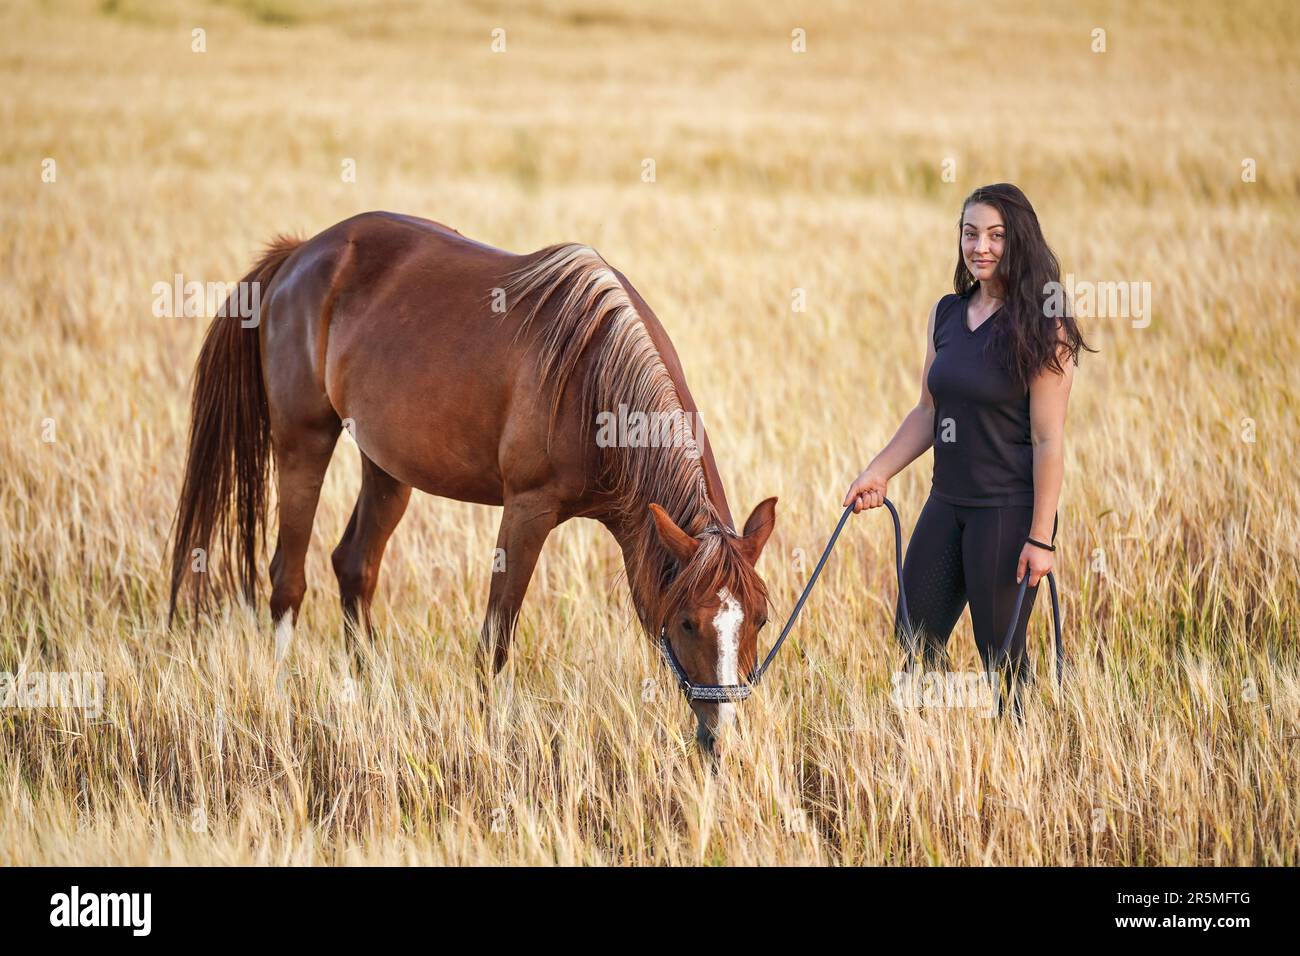 Jeune femme en leggings noirs et t-shirt marchant avec le cheval arabe brun dans le champ de blé Banque D'Images